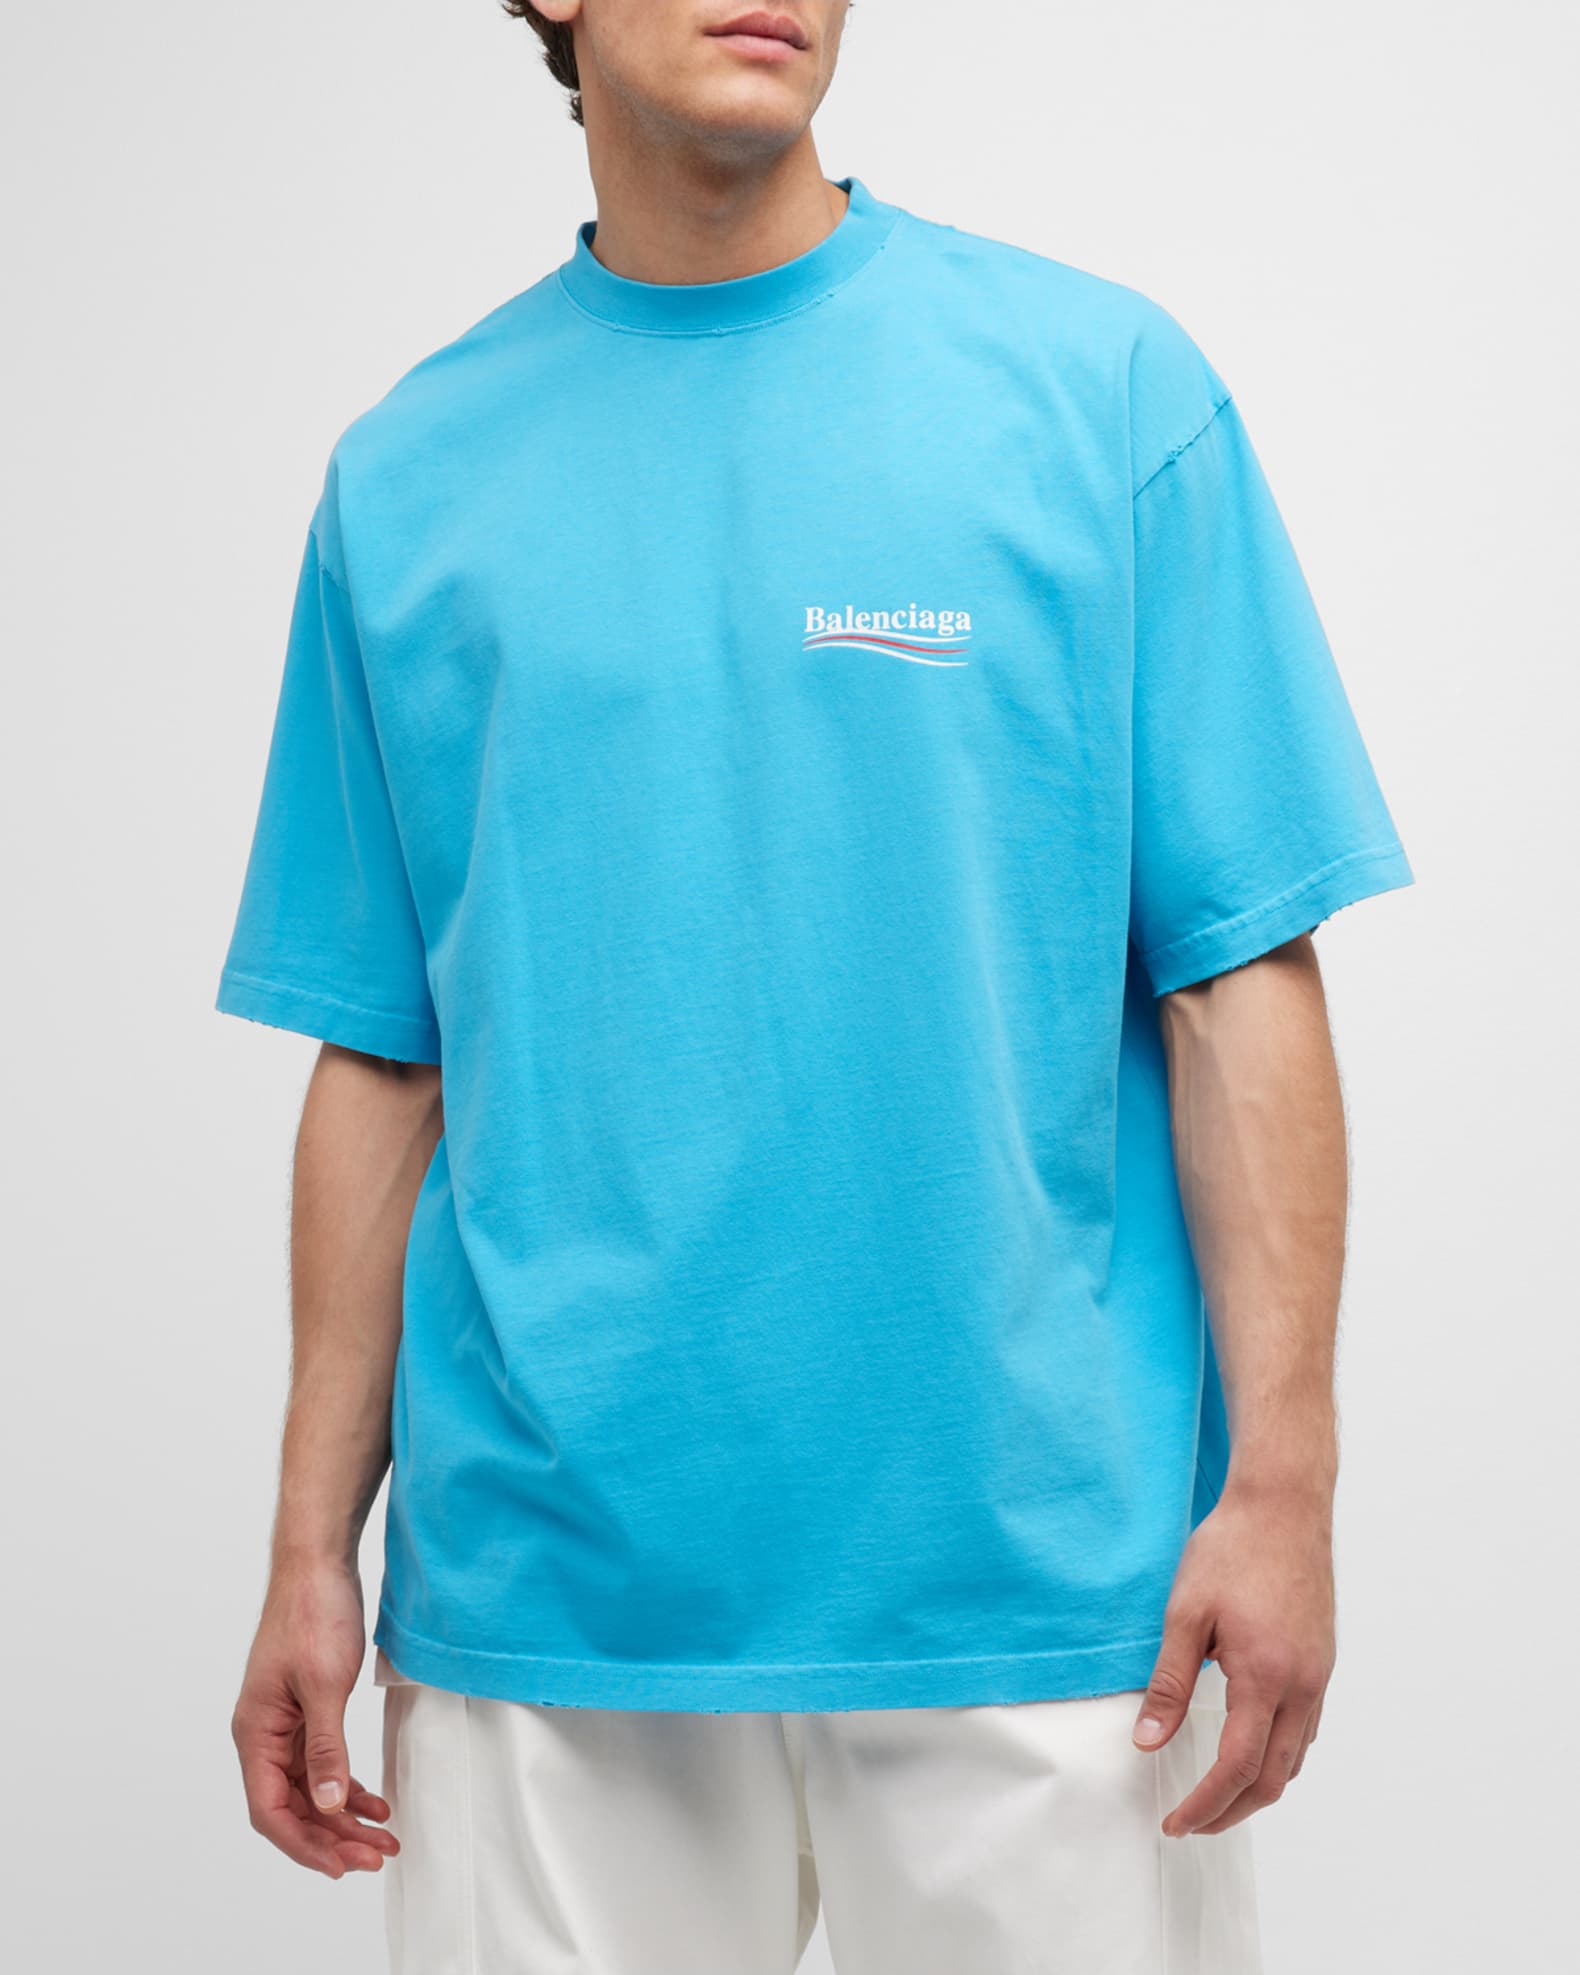 Balenciaga Men's Political Campaign T Shirt Large Fit | Neiman Marcus